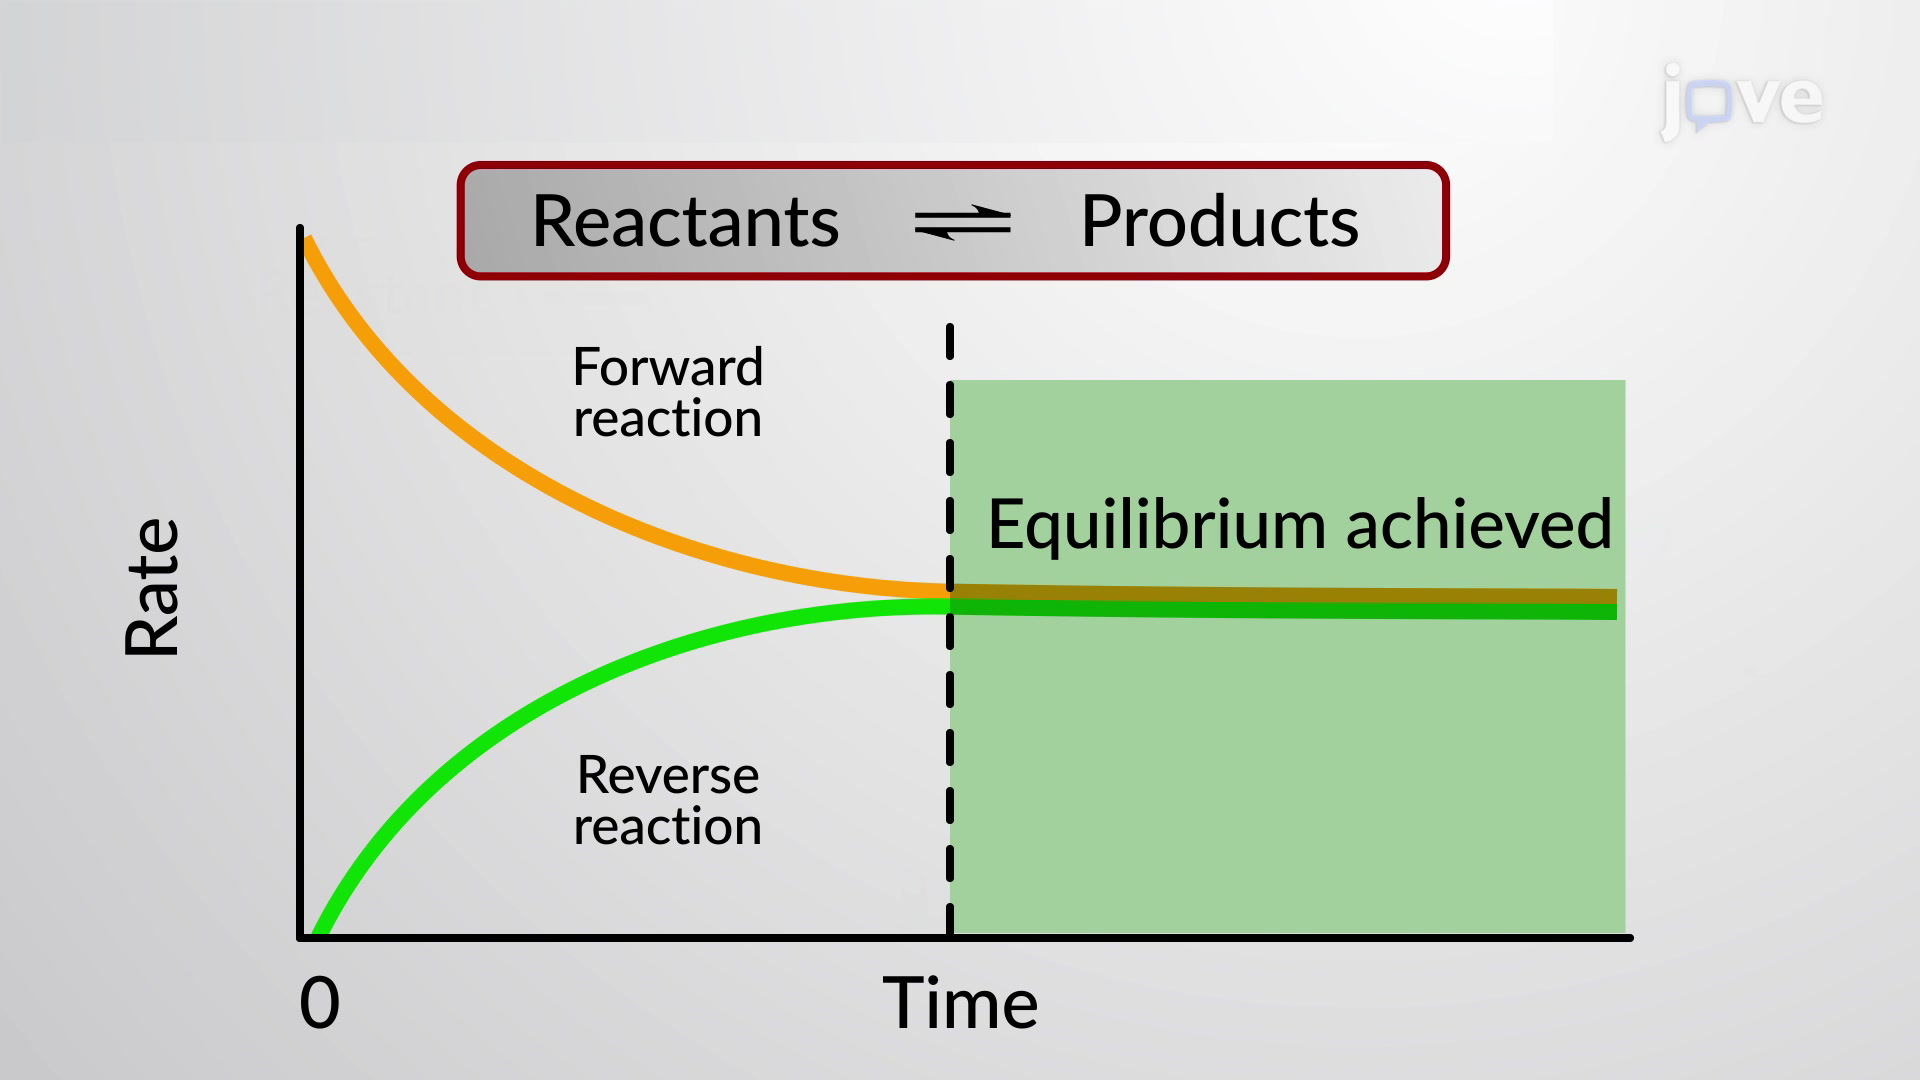 Chemical equilibrium